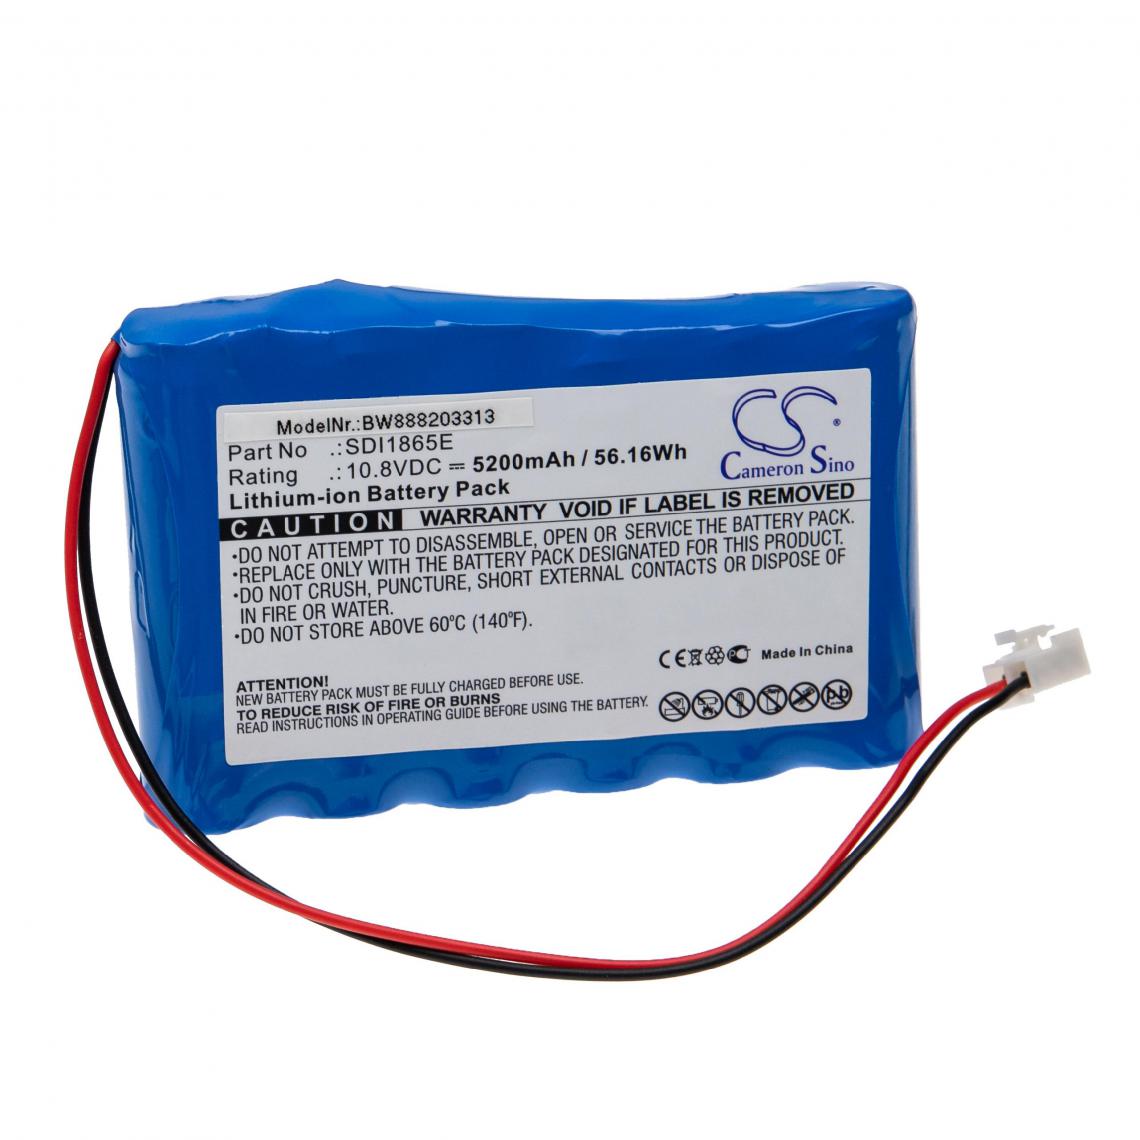 Vhbw - vhbw Batterie remplacement pour Mekics SDI1865E pour appareil médical (5200mAh, 10,8V, Li-ion) - Piles spécifiques